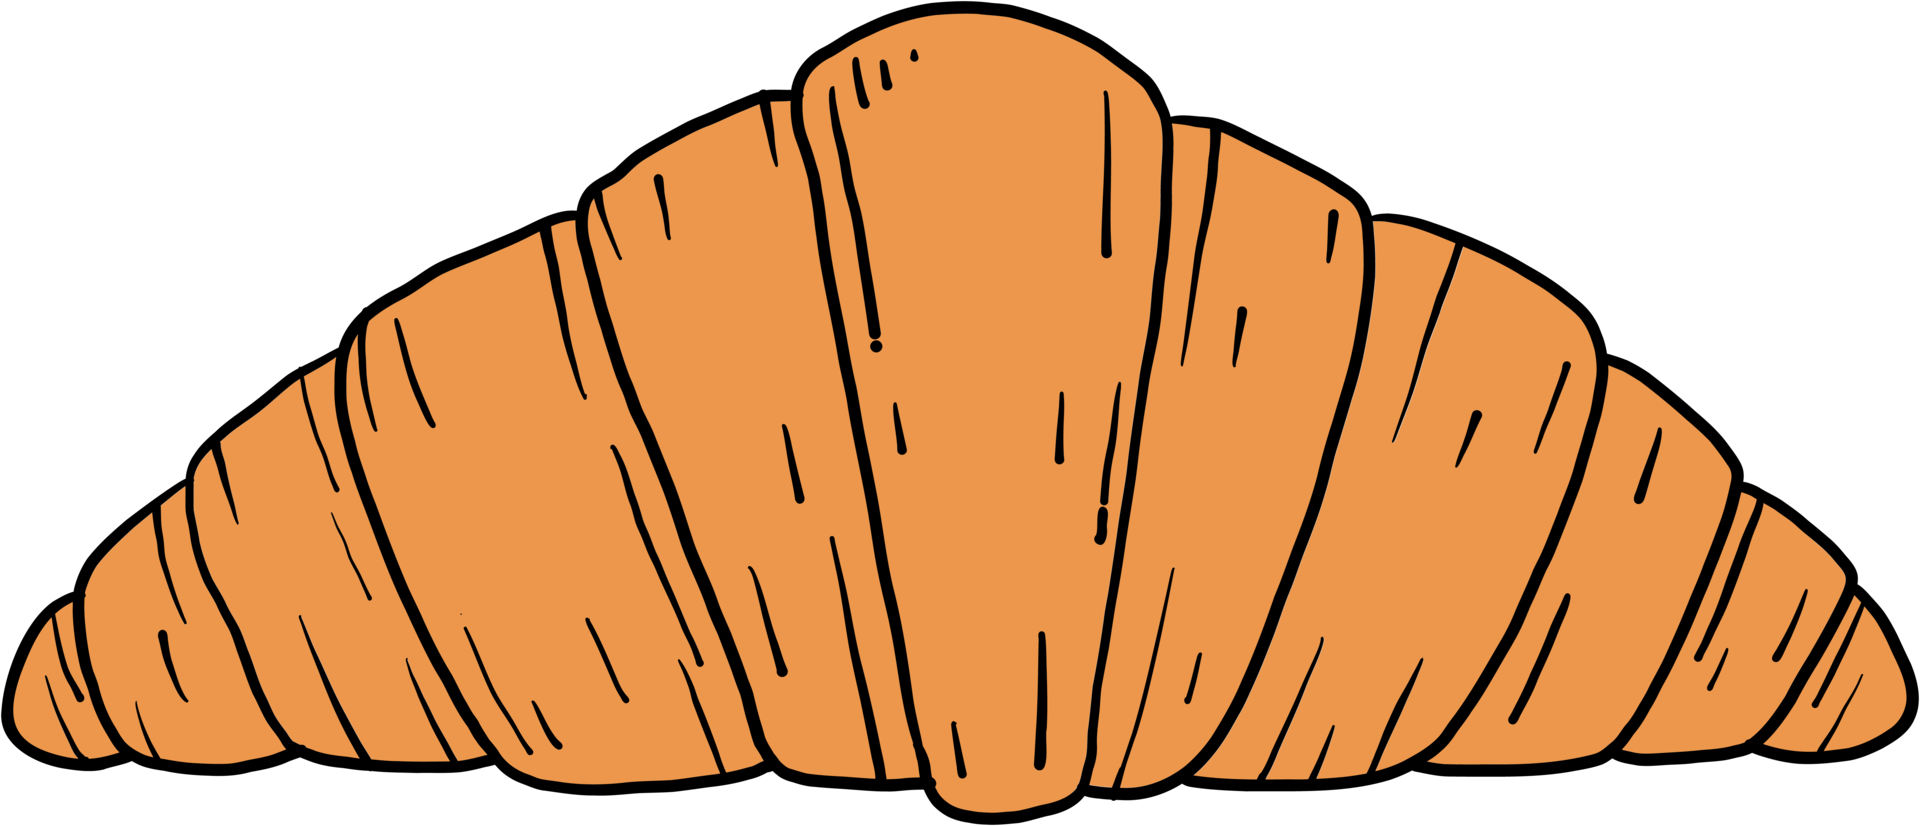 Doodle dibujo a mano alzada de pan croissant. png